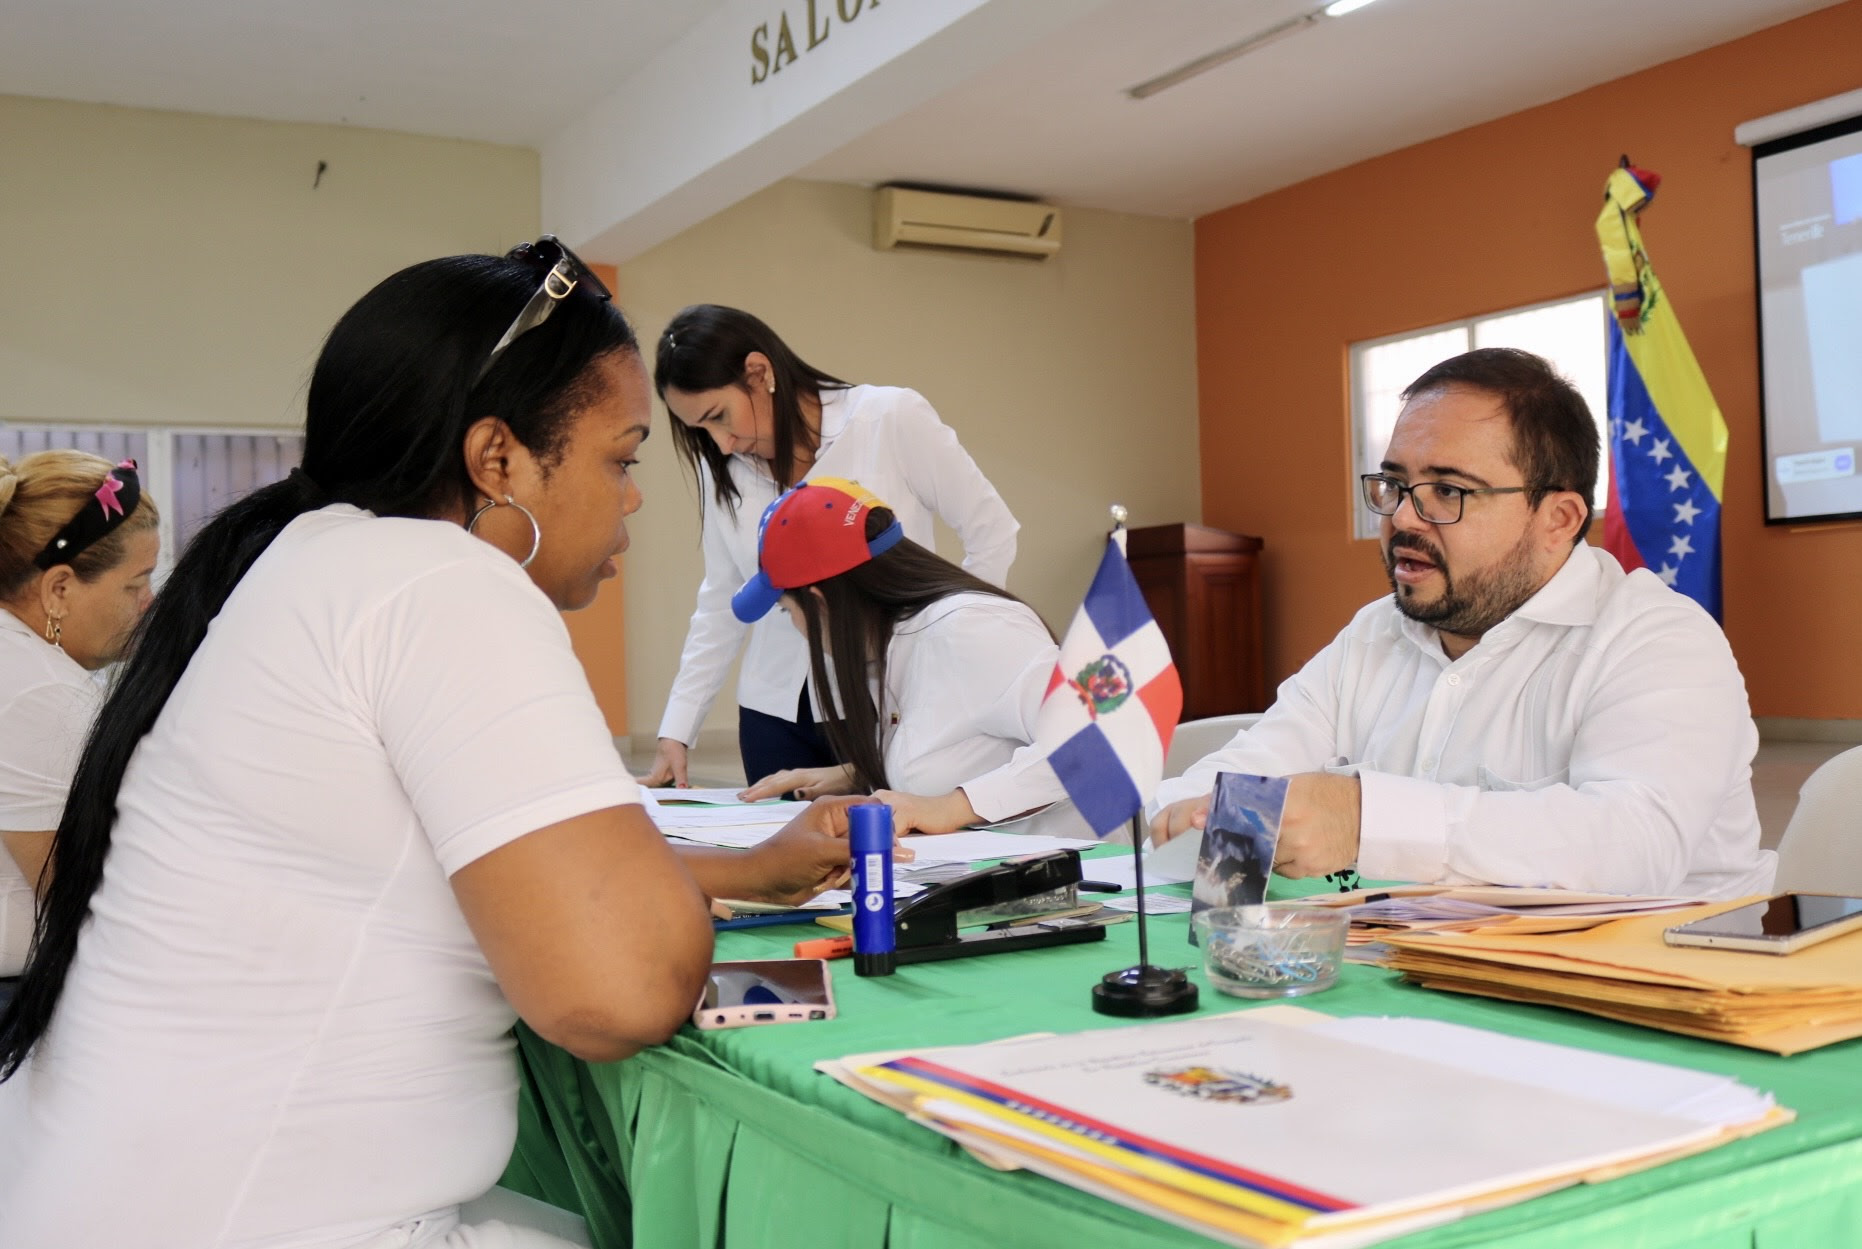 Embajada venezolana organizó con éxito Primera Jornada de Atención Consular Móvil en Zona Sur de República Dominicana